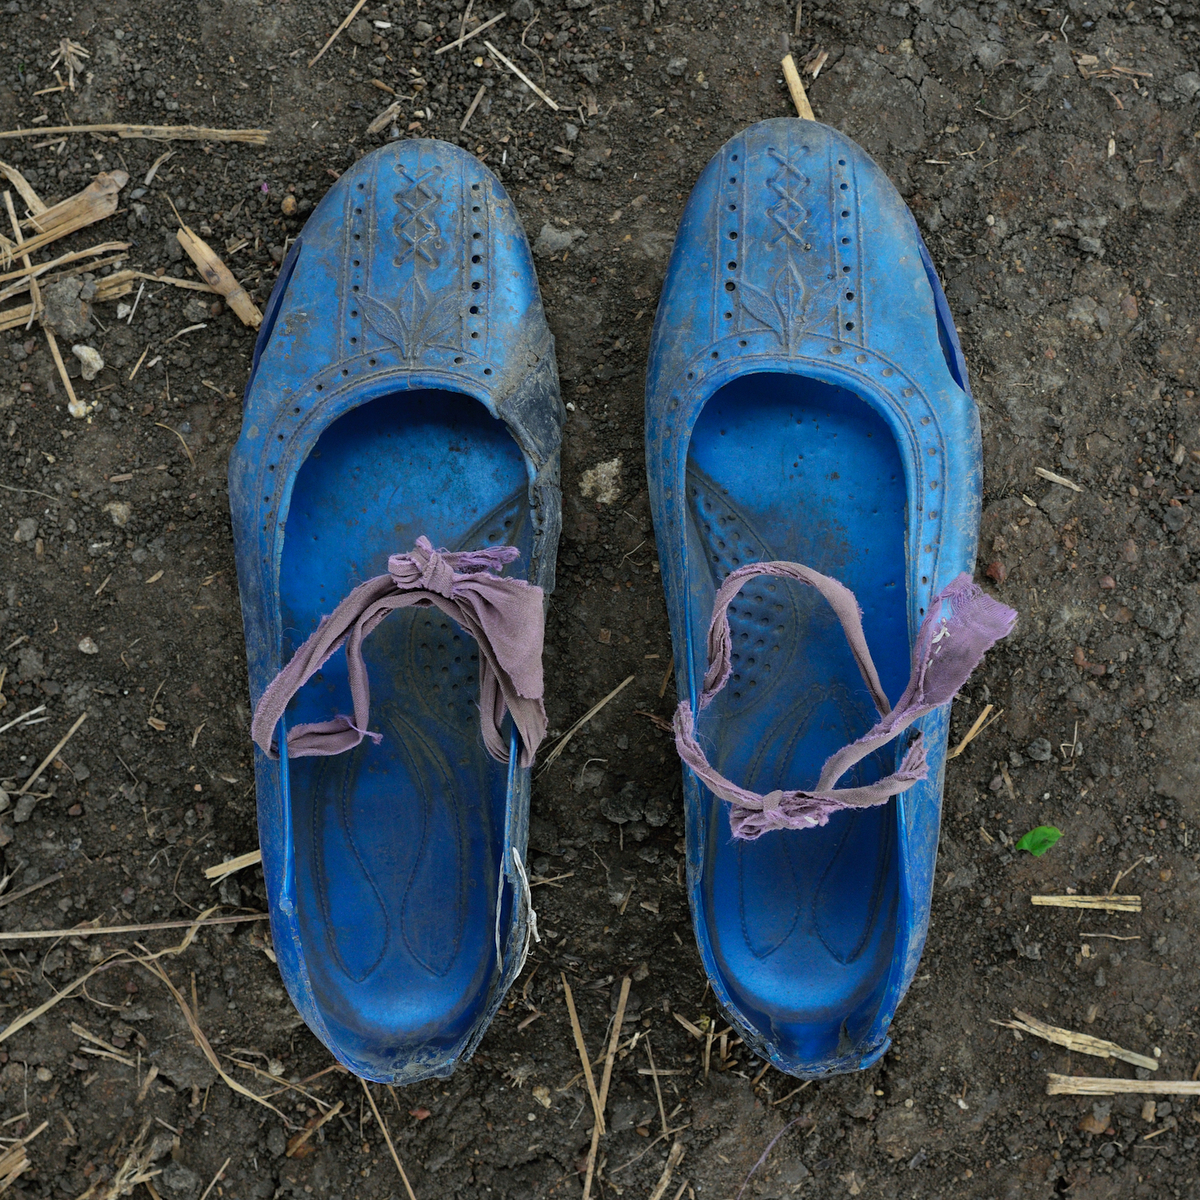 A Long Walk (Refugee Shoe Project) © Shannon Jensen, 2014